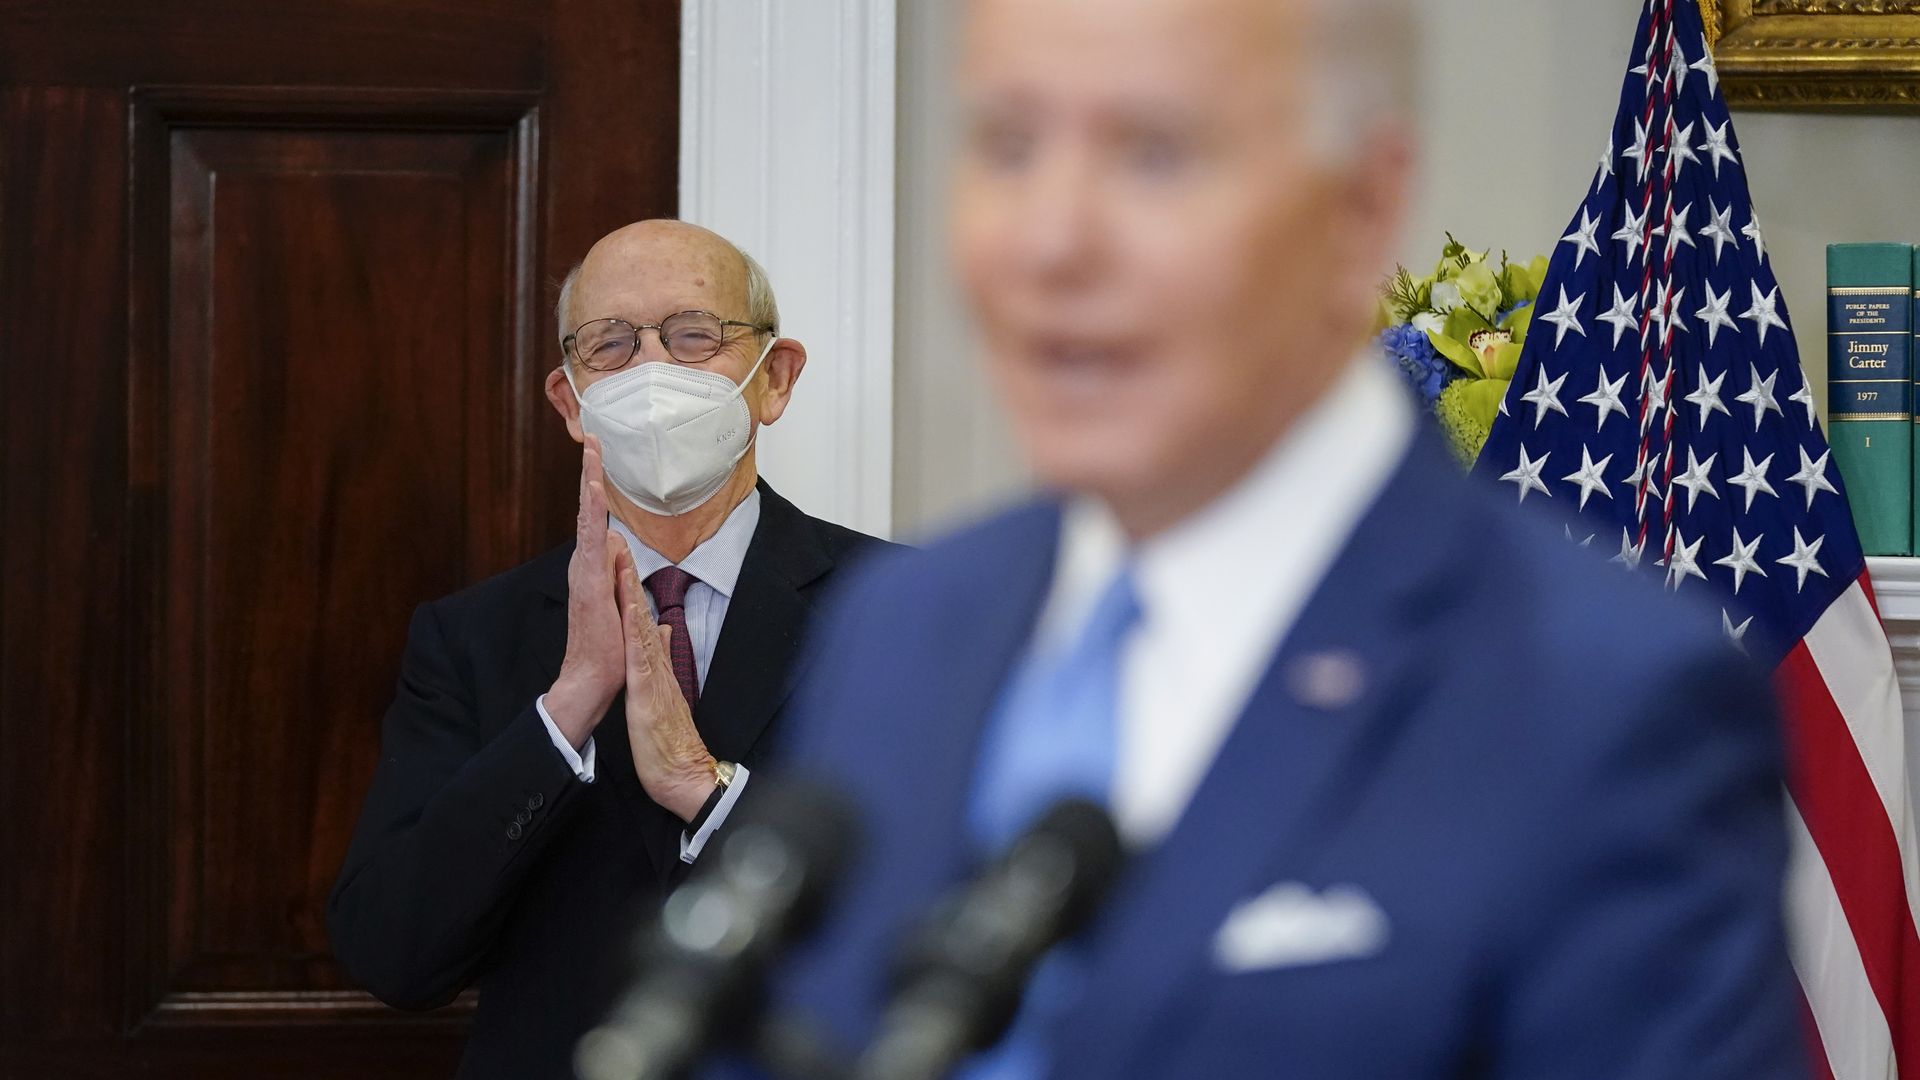 Stephen Breyer looks on as President Biden speaks at the White House